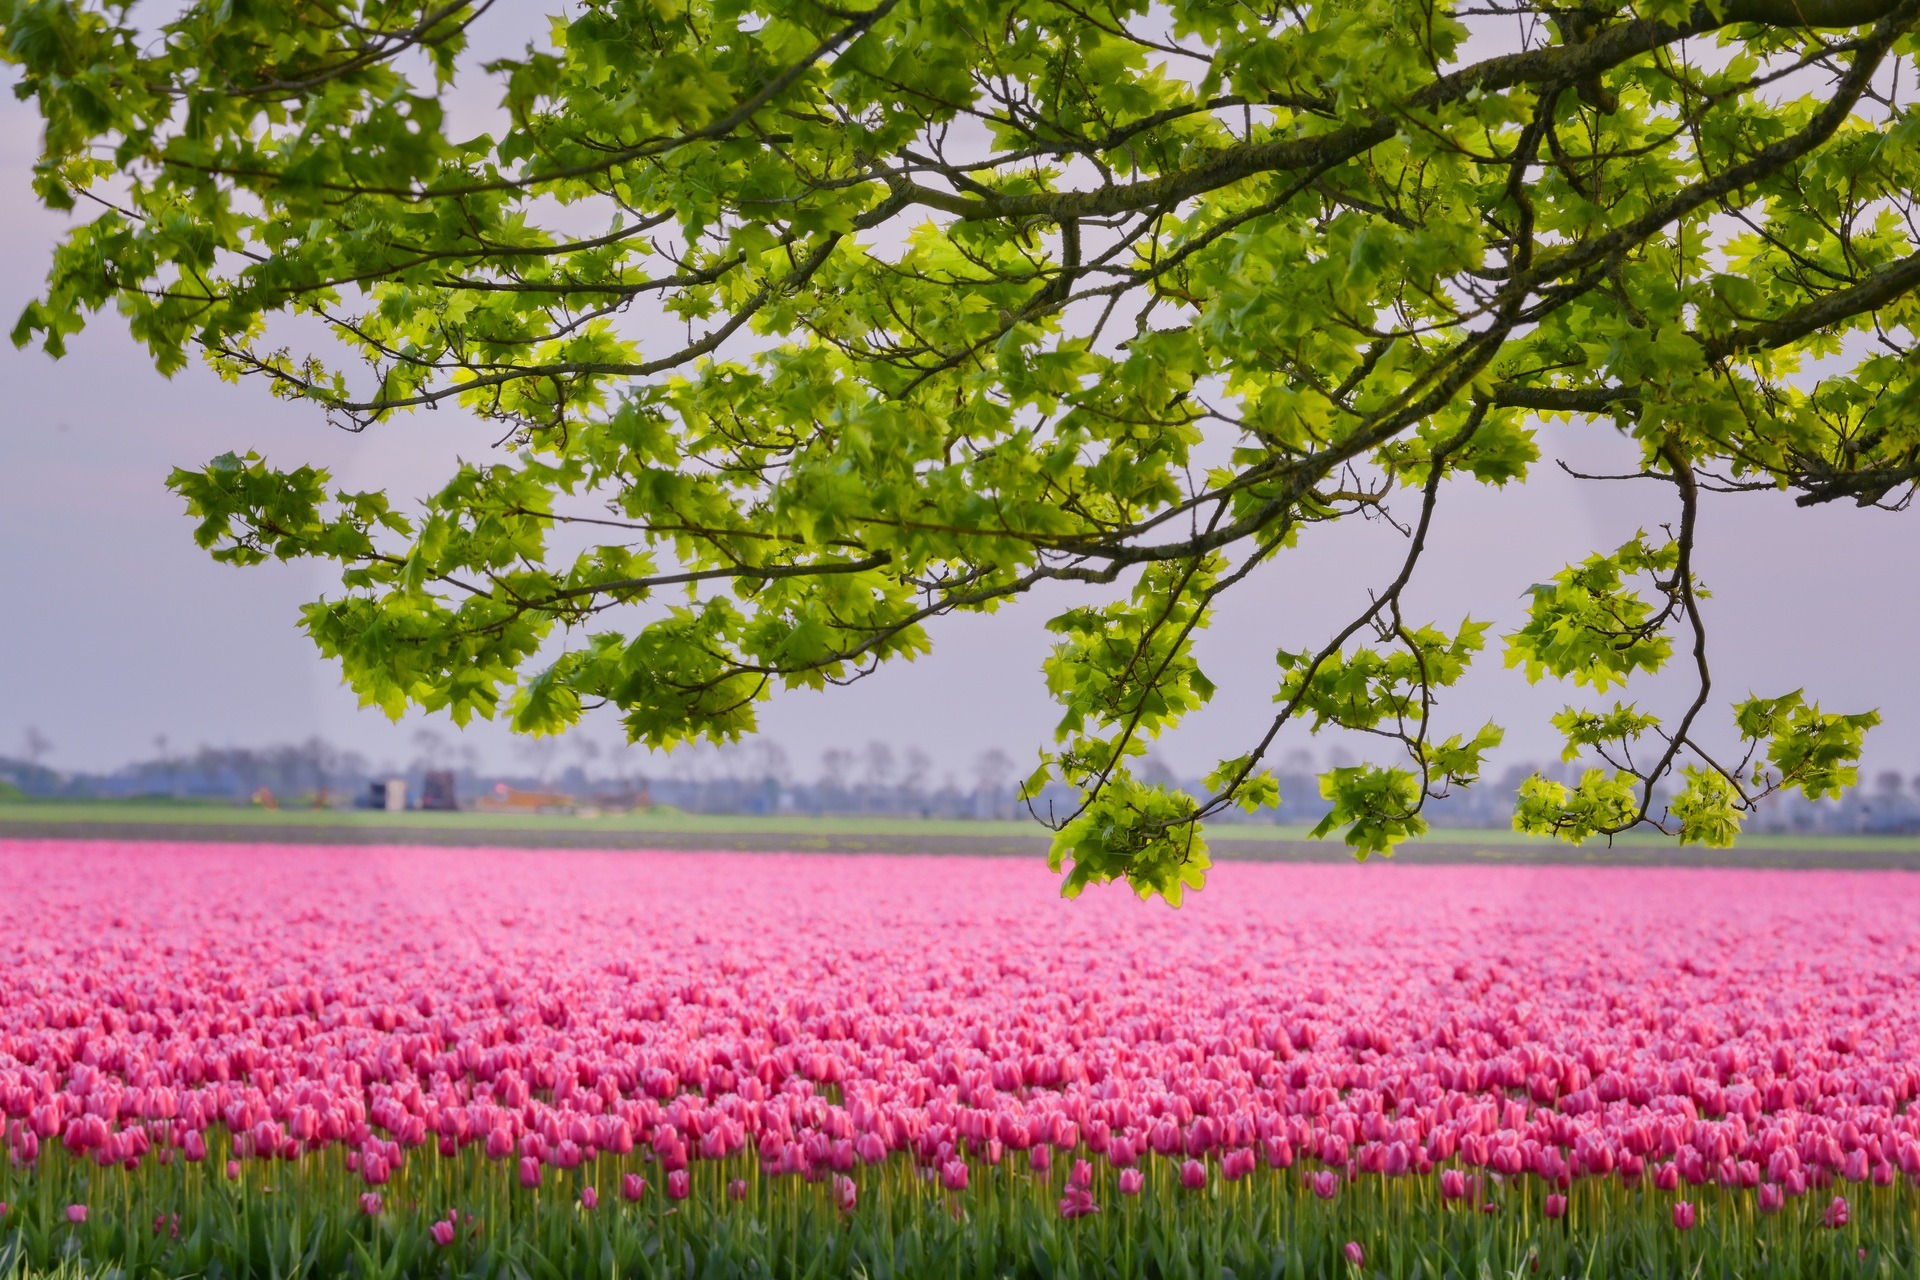 Mãn nhãn cánh đồng hoa tulip đẹp như cổ tích ở ngôi làng cổ 400 tuổi - Ảnh 3.